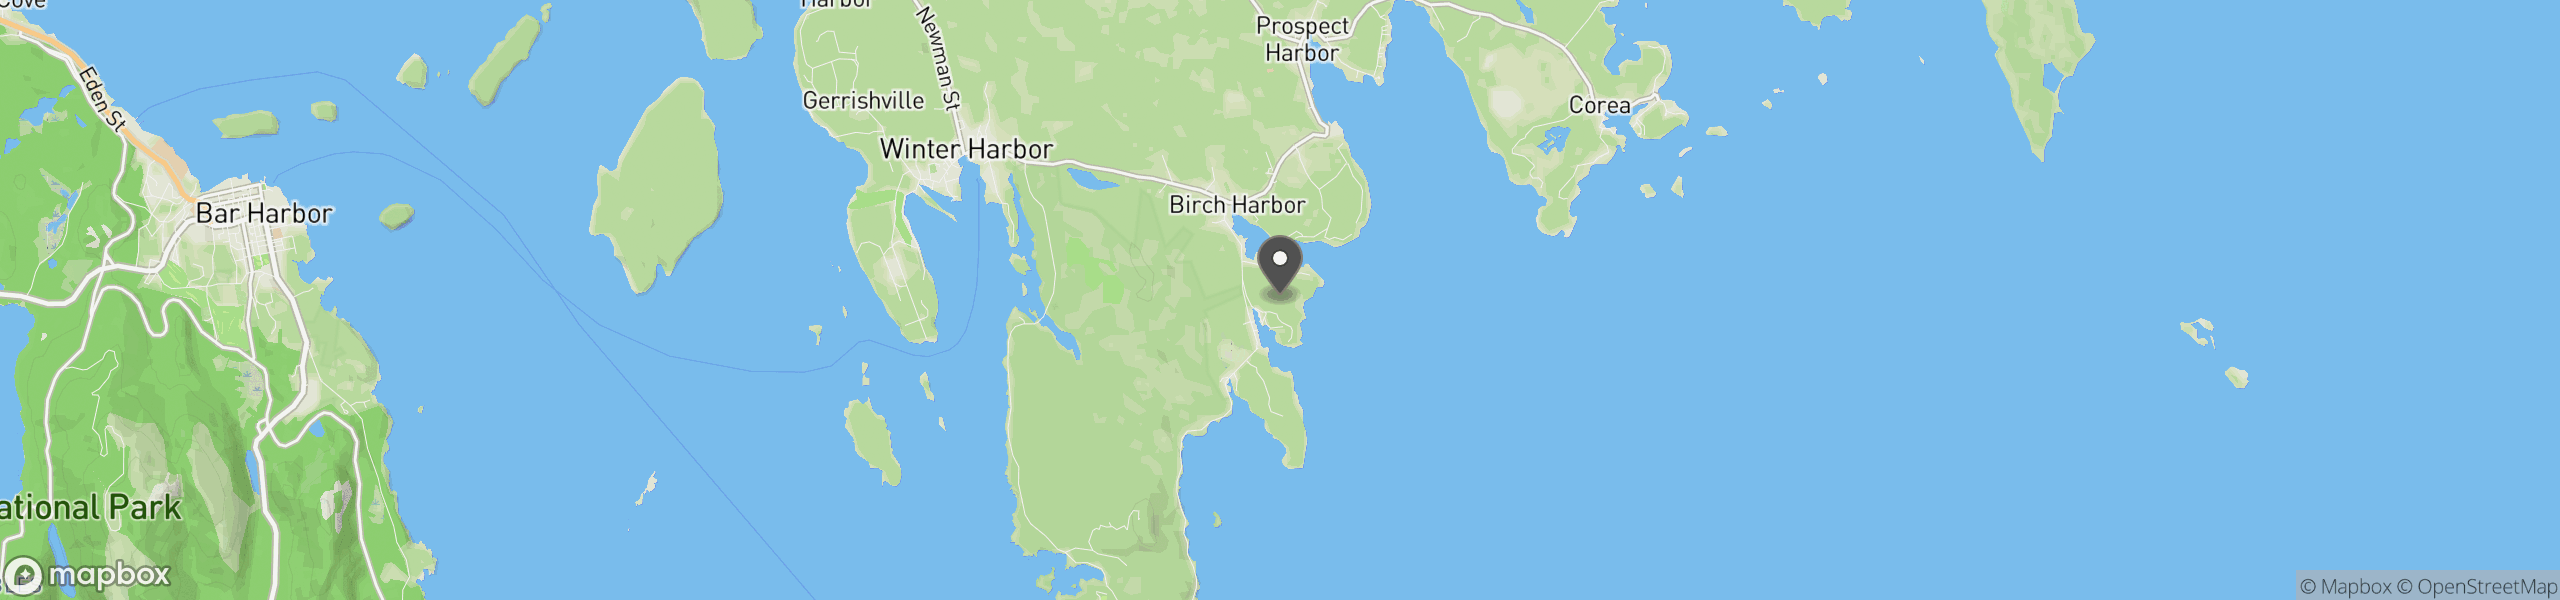 Birch Harbor, ME 04613